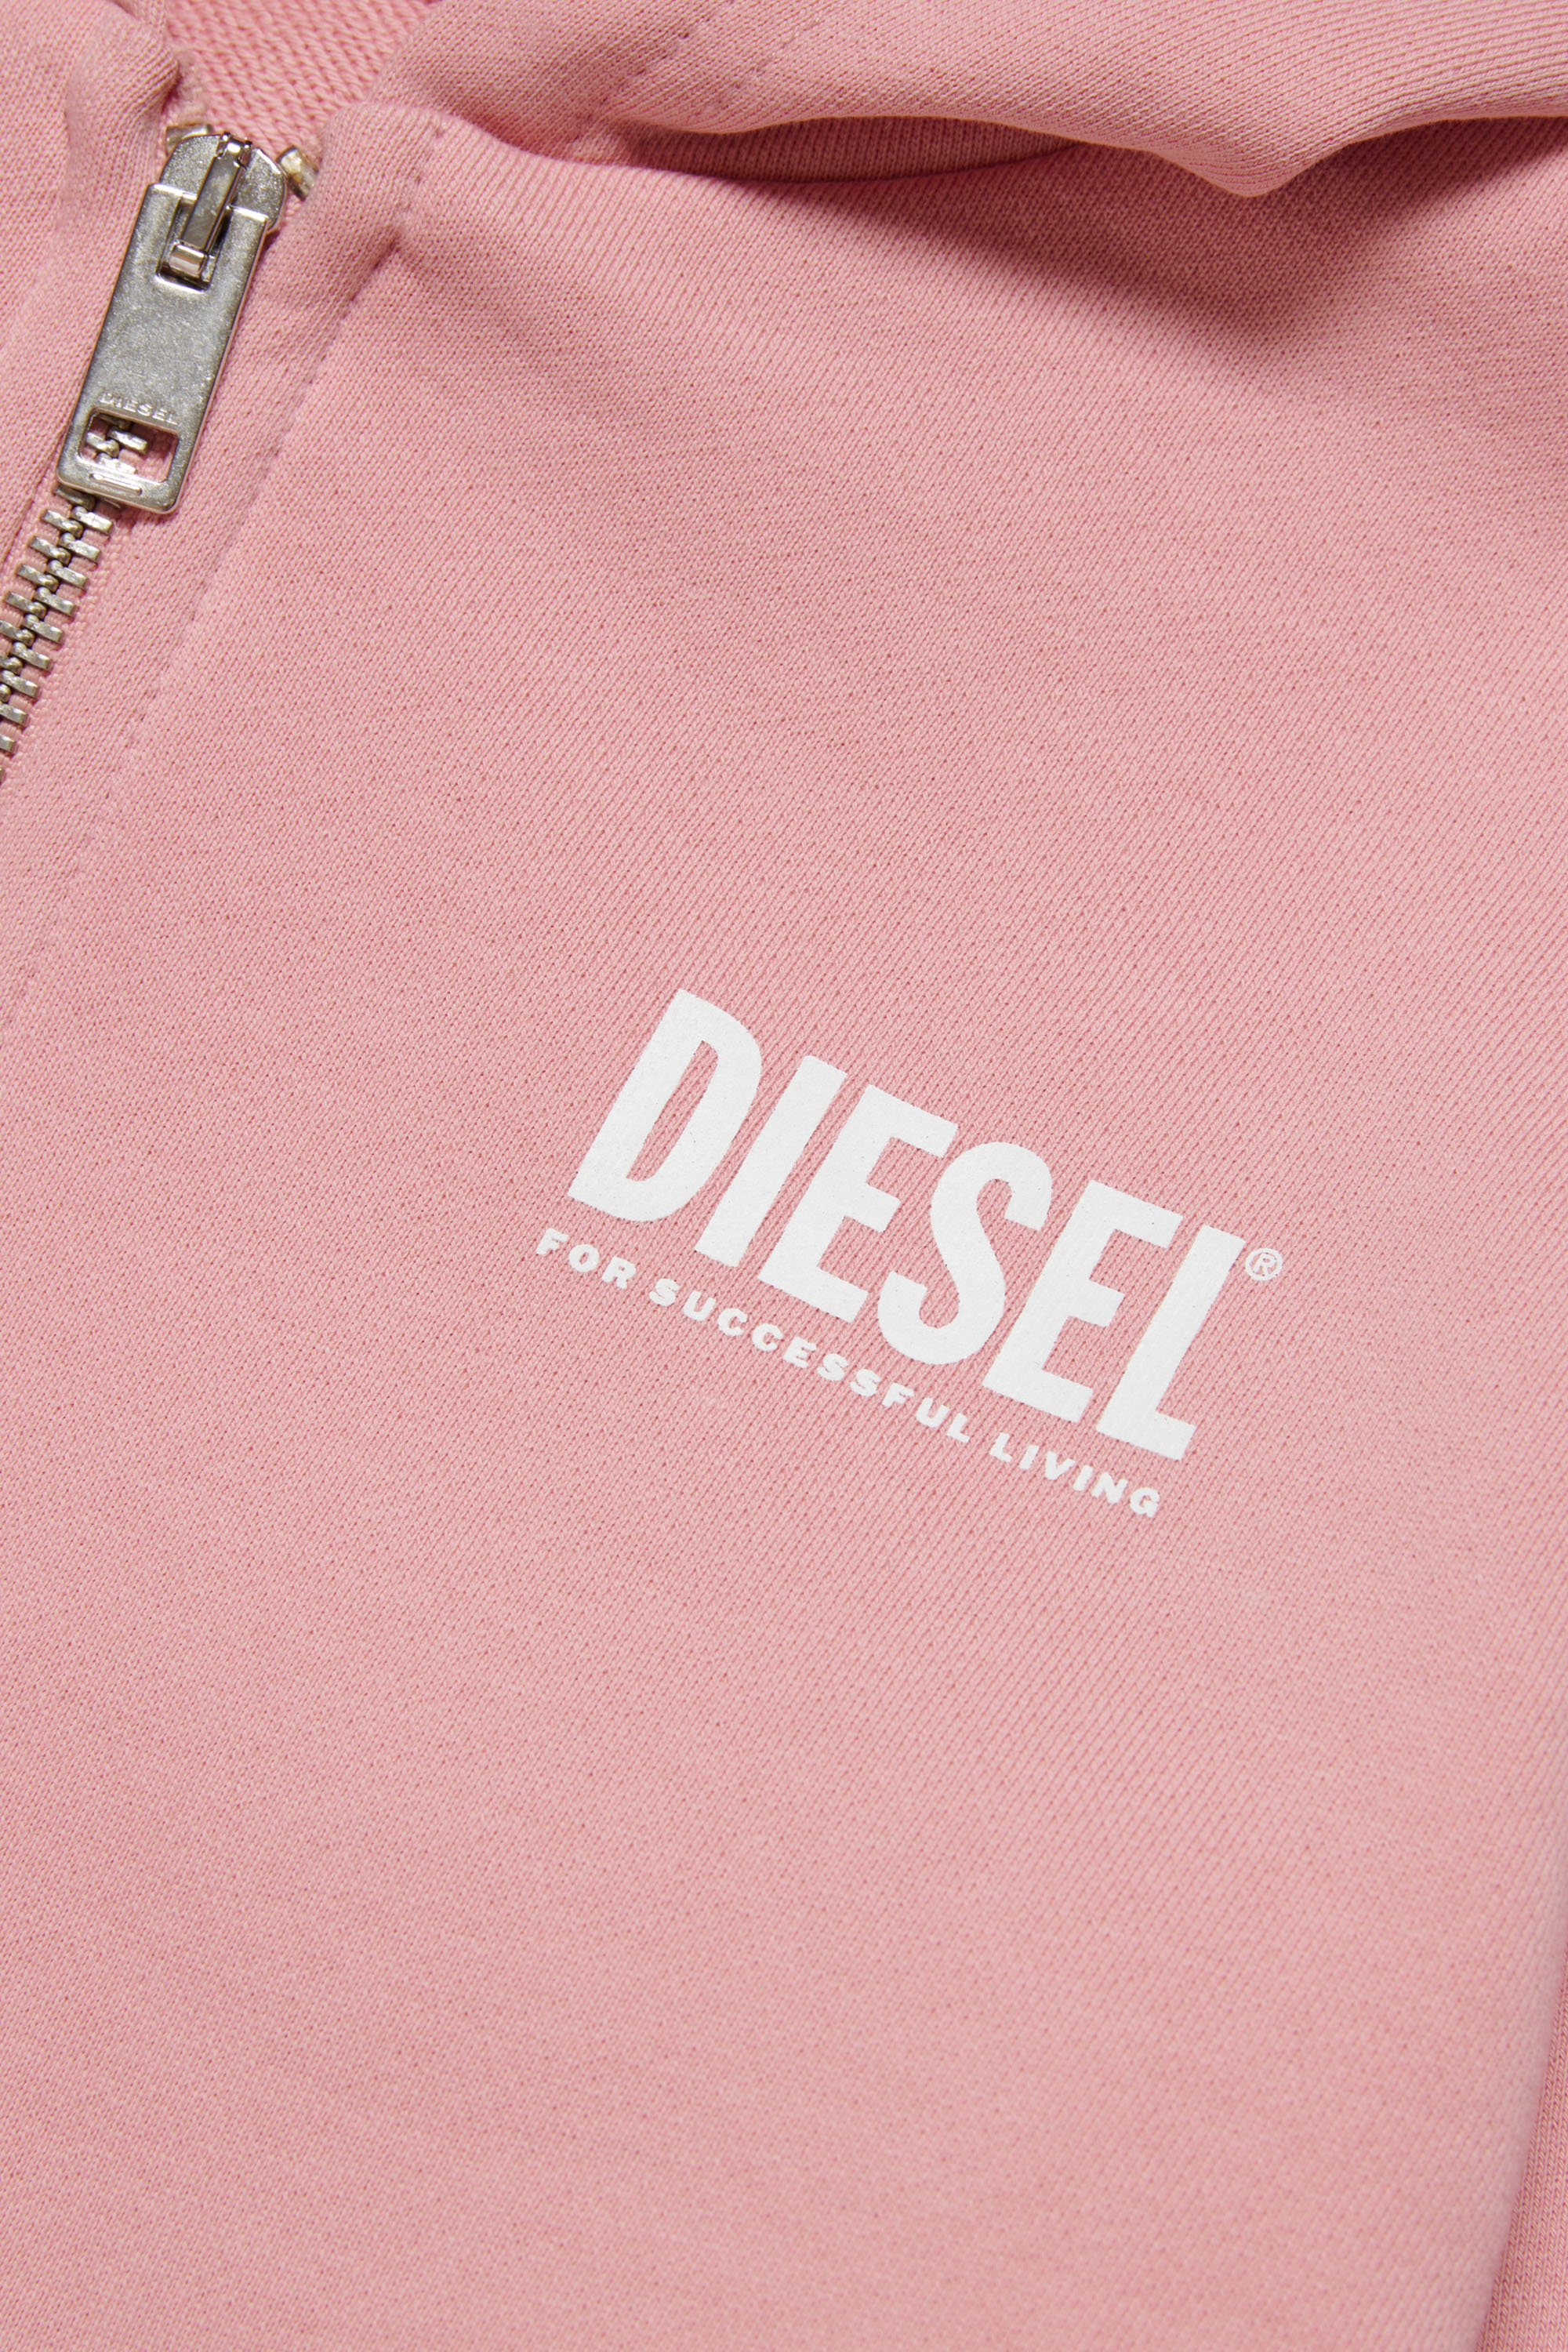 Diesel - LSTEPPIU DI OVER, Pink - Image 3